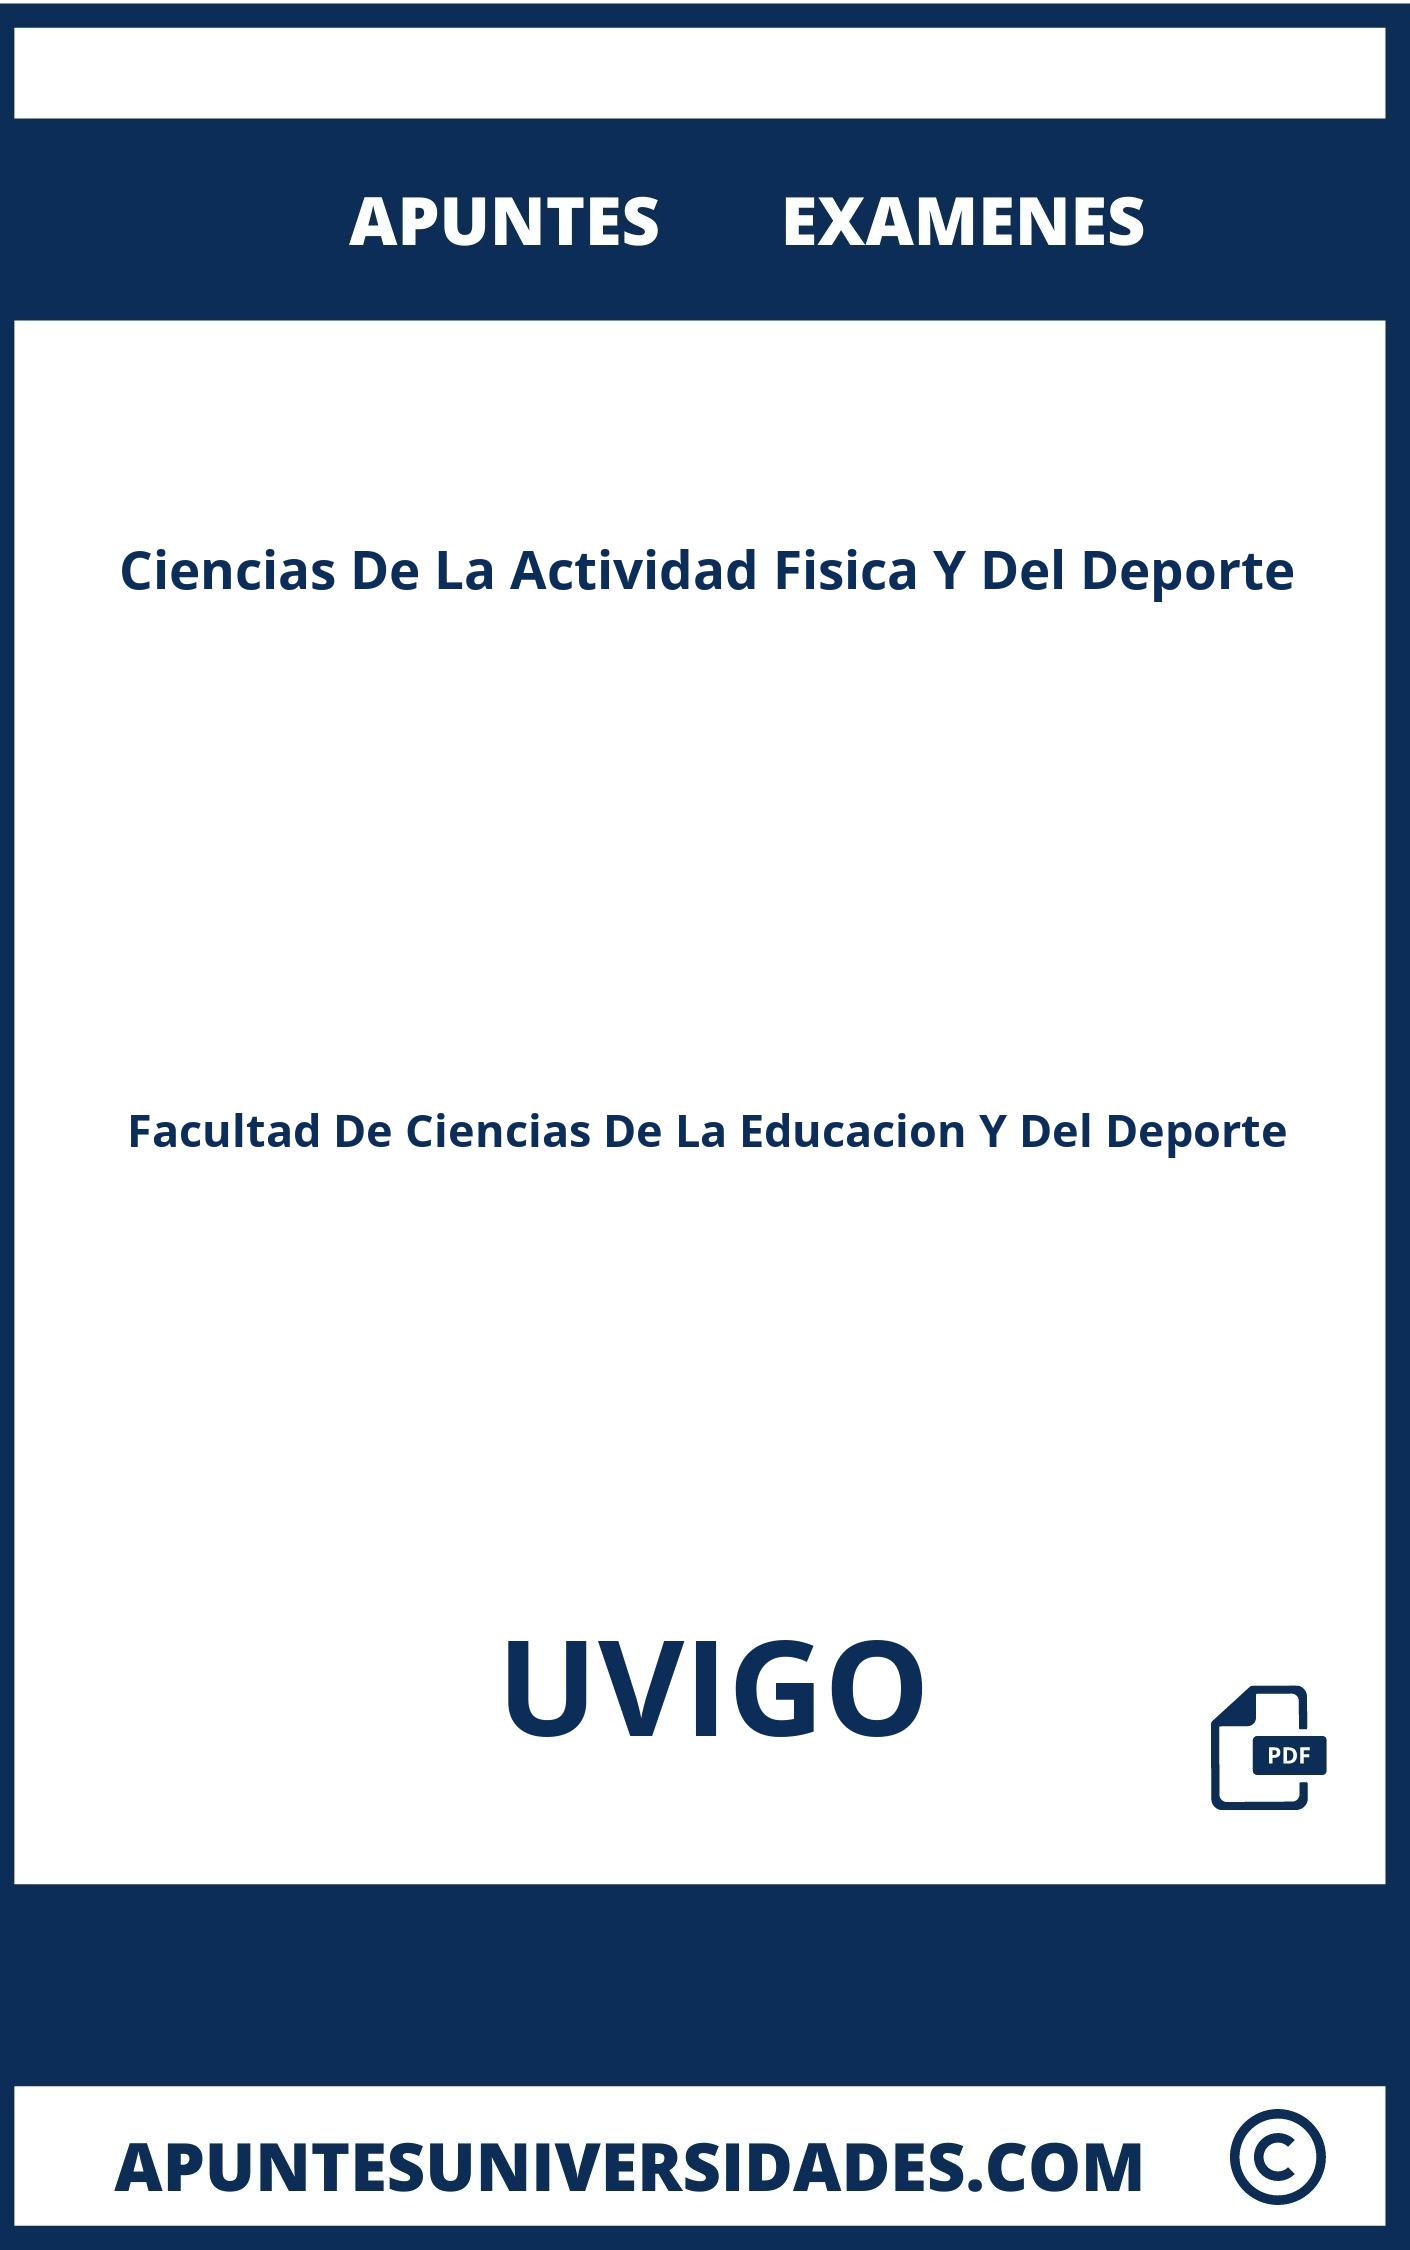 Examenes y Apuntes de Ciencias De La Actividad Fisica Y Del Deporte UVIGO